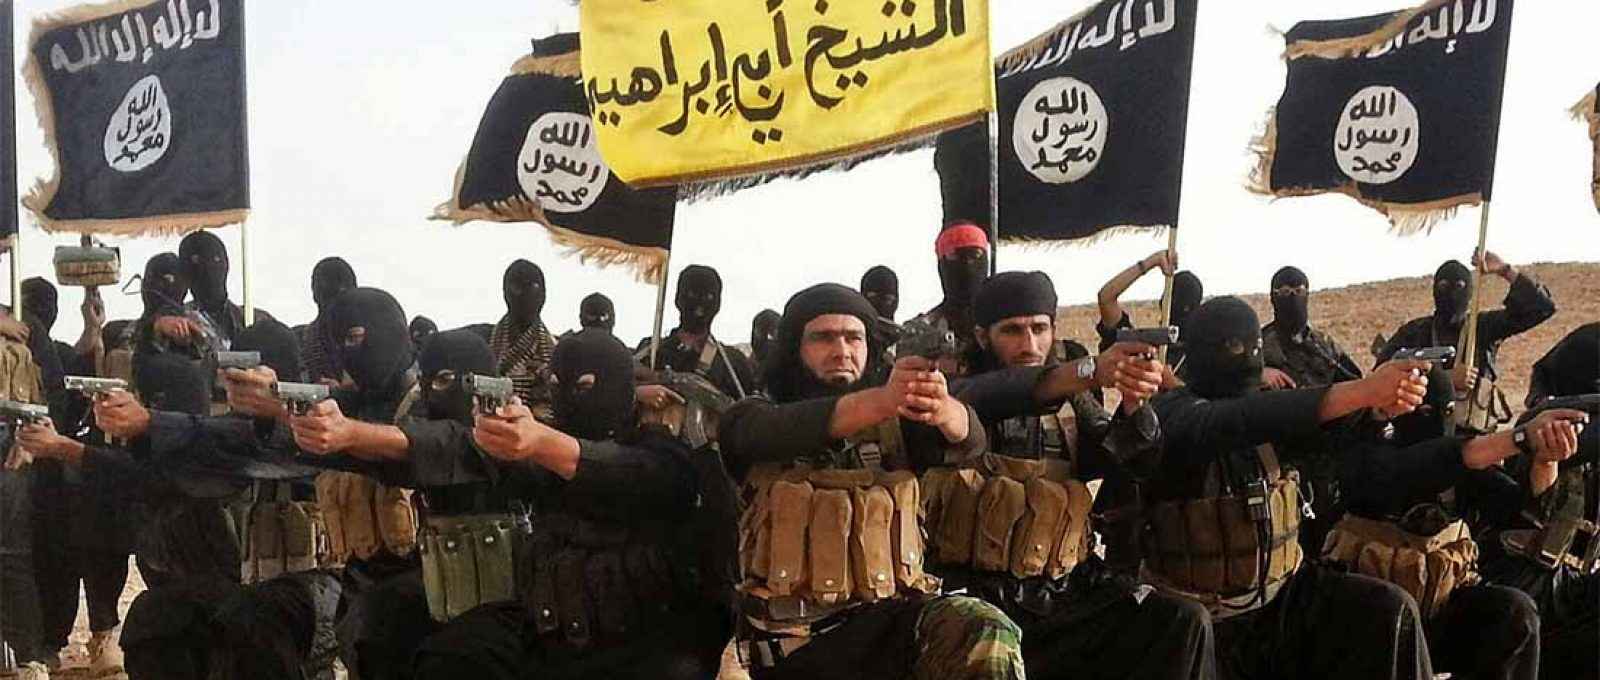 Militantes do Estado Islâmico (Foto: Alliance/Abaca via DW).